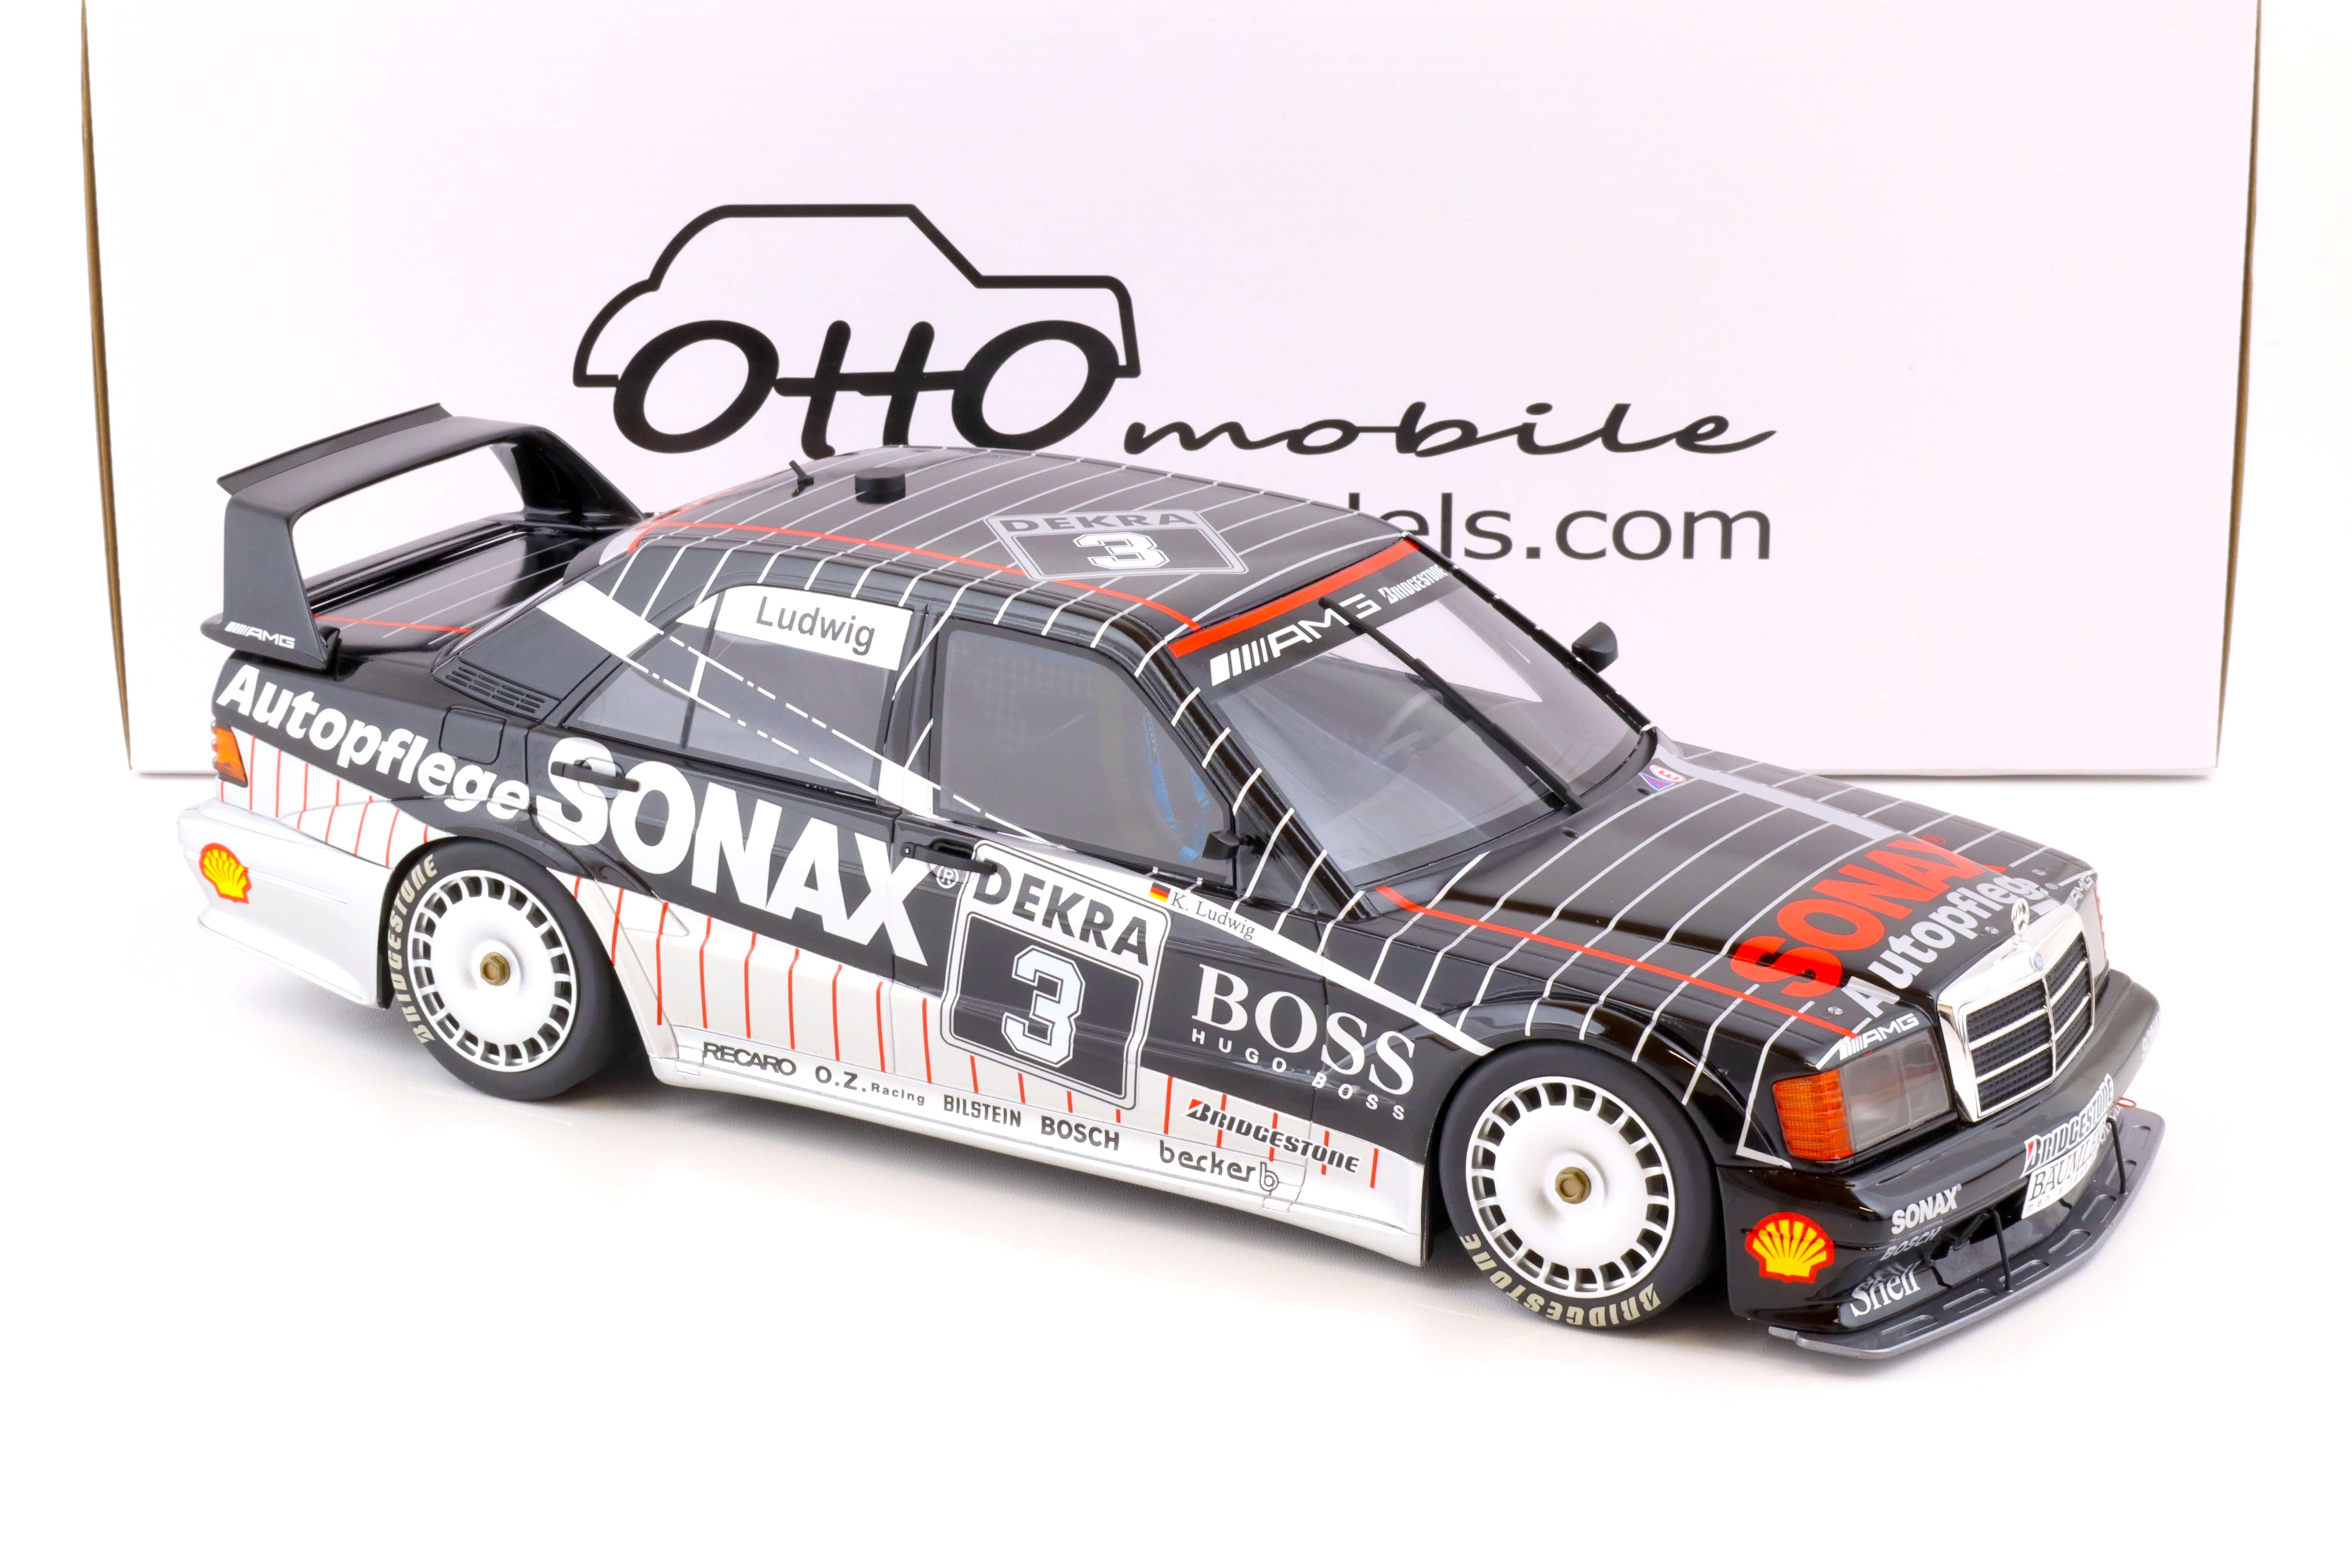 1:12 OTTO mobile G062 Mercedes 190E EVO 2 W201 DTM 1992 Ludwig #3 SONAX